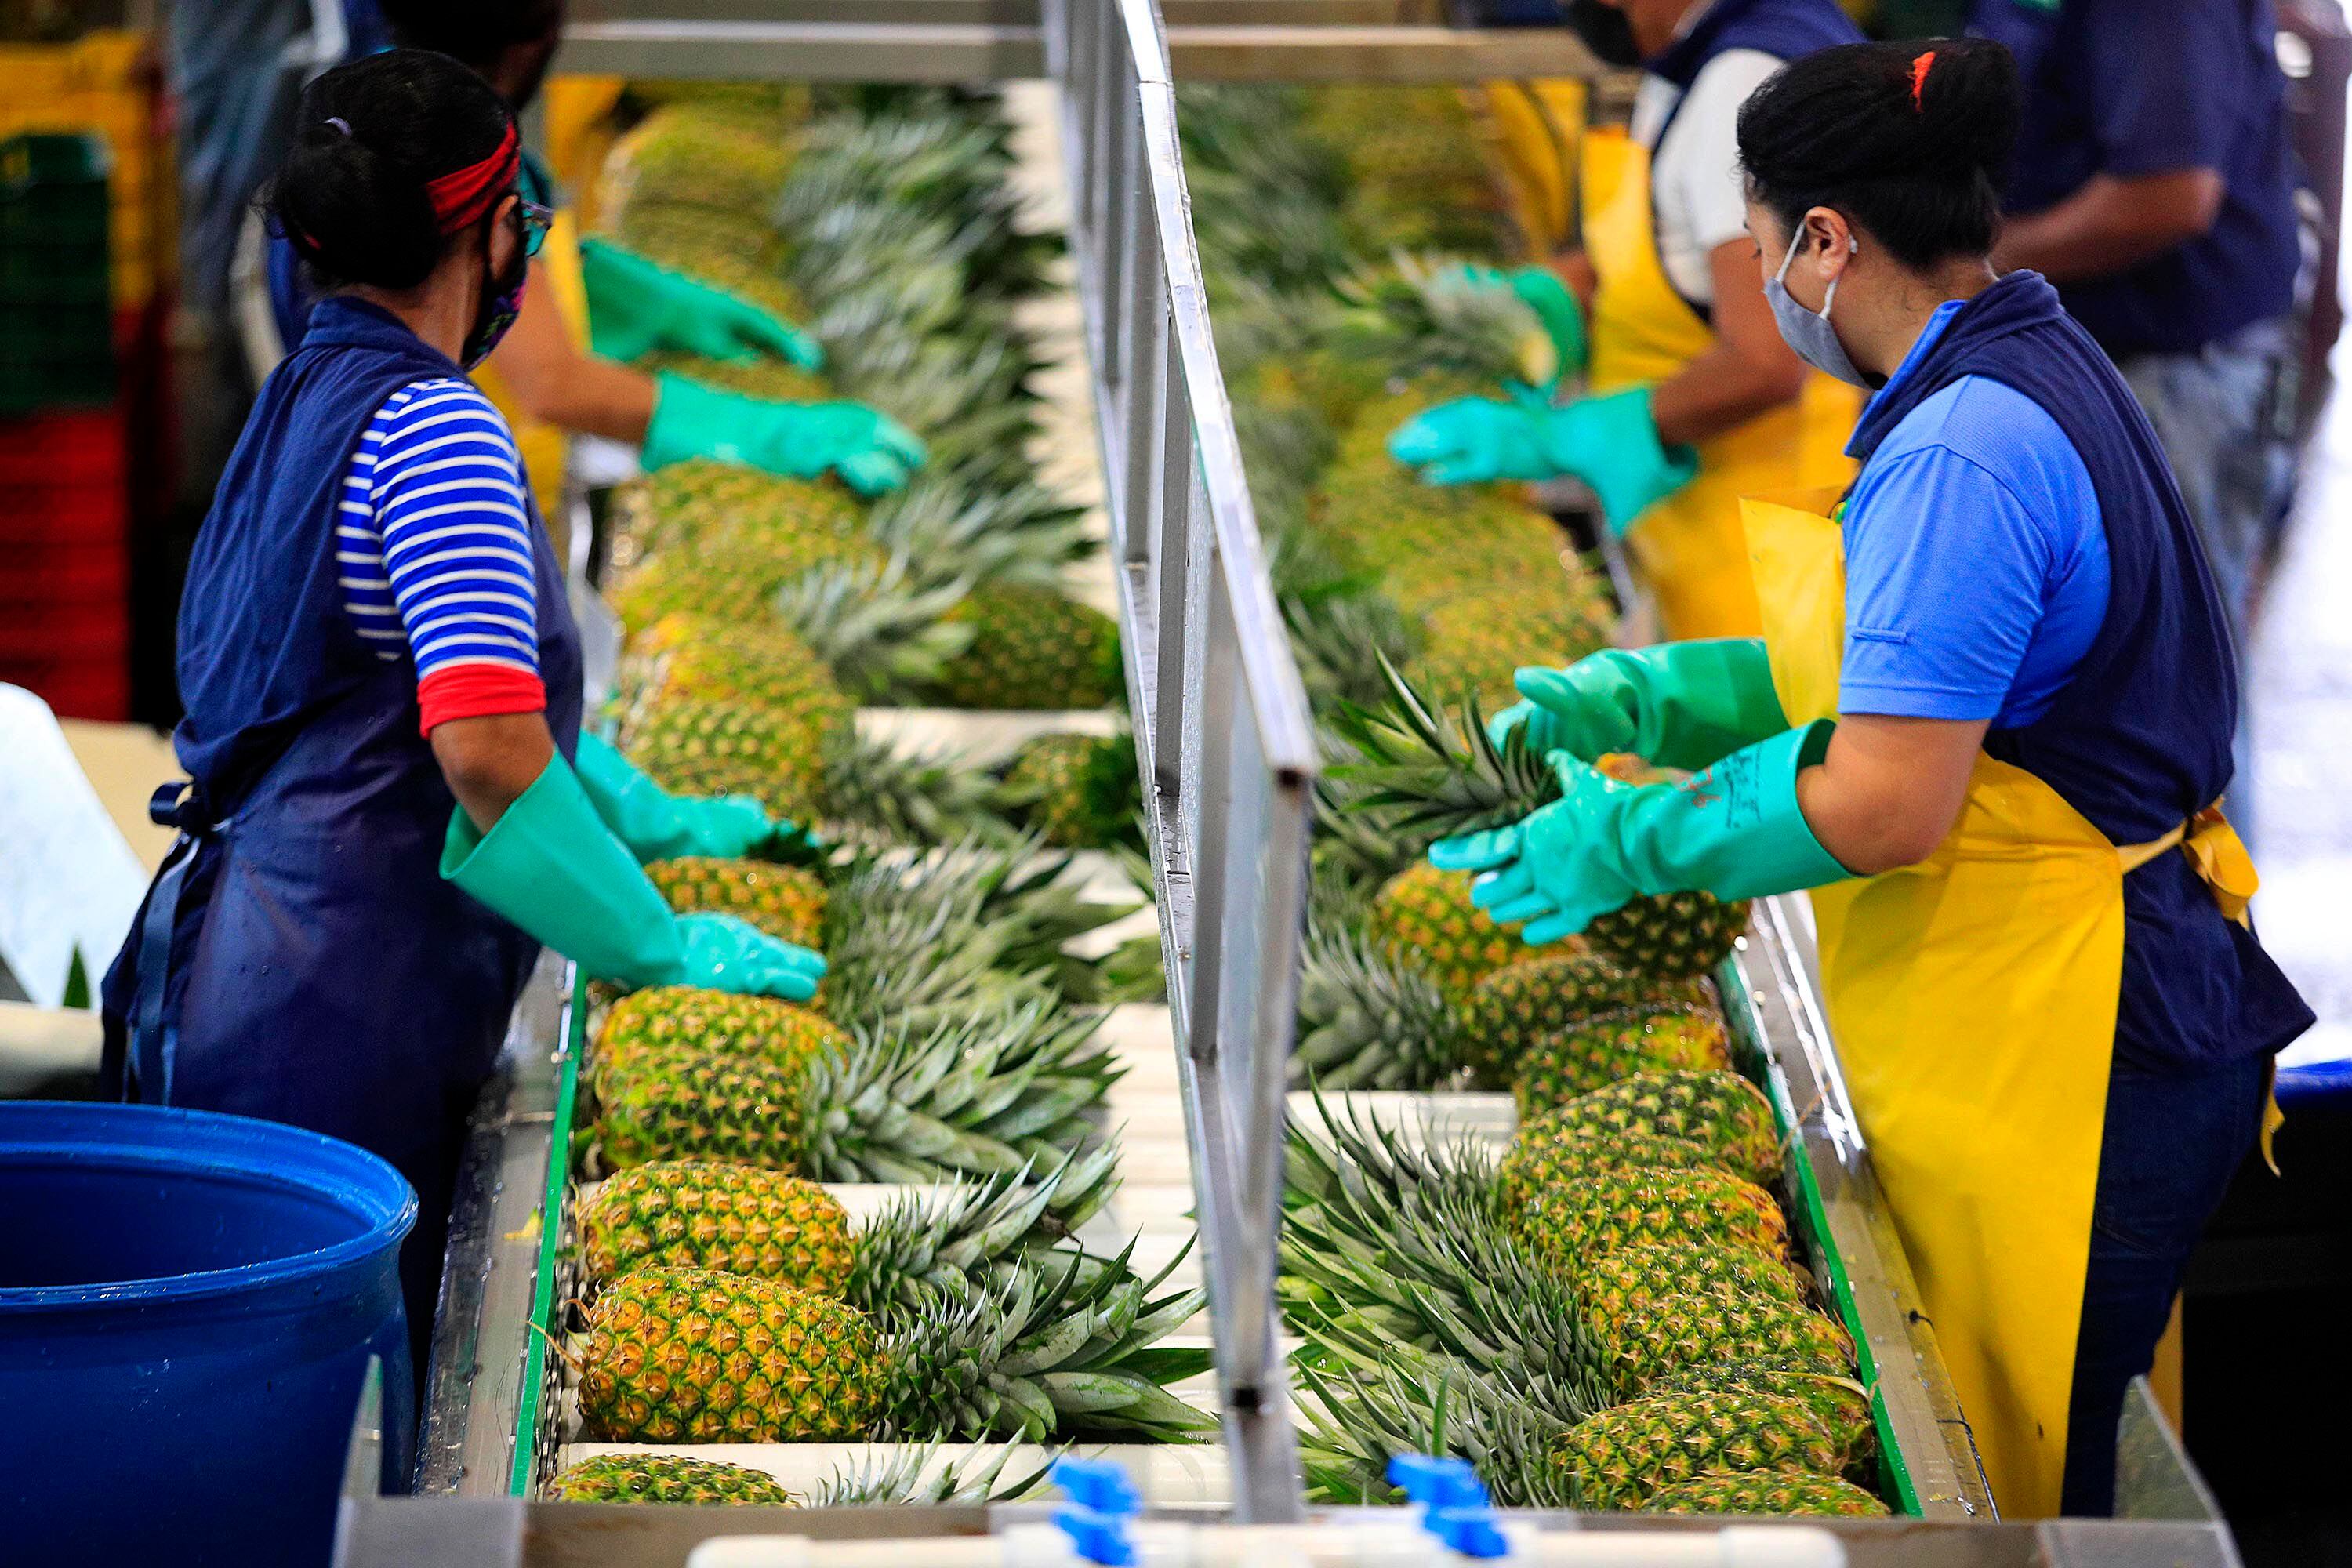 Las exportaciones de piña, segundo rubro agrícola de exportación de Costa Rica, dependen en gran medida de la electricidad para garantizar la calidad de fruta en el proceso de empaque y traslado.